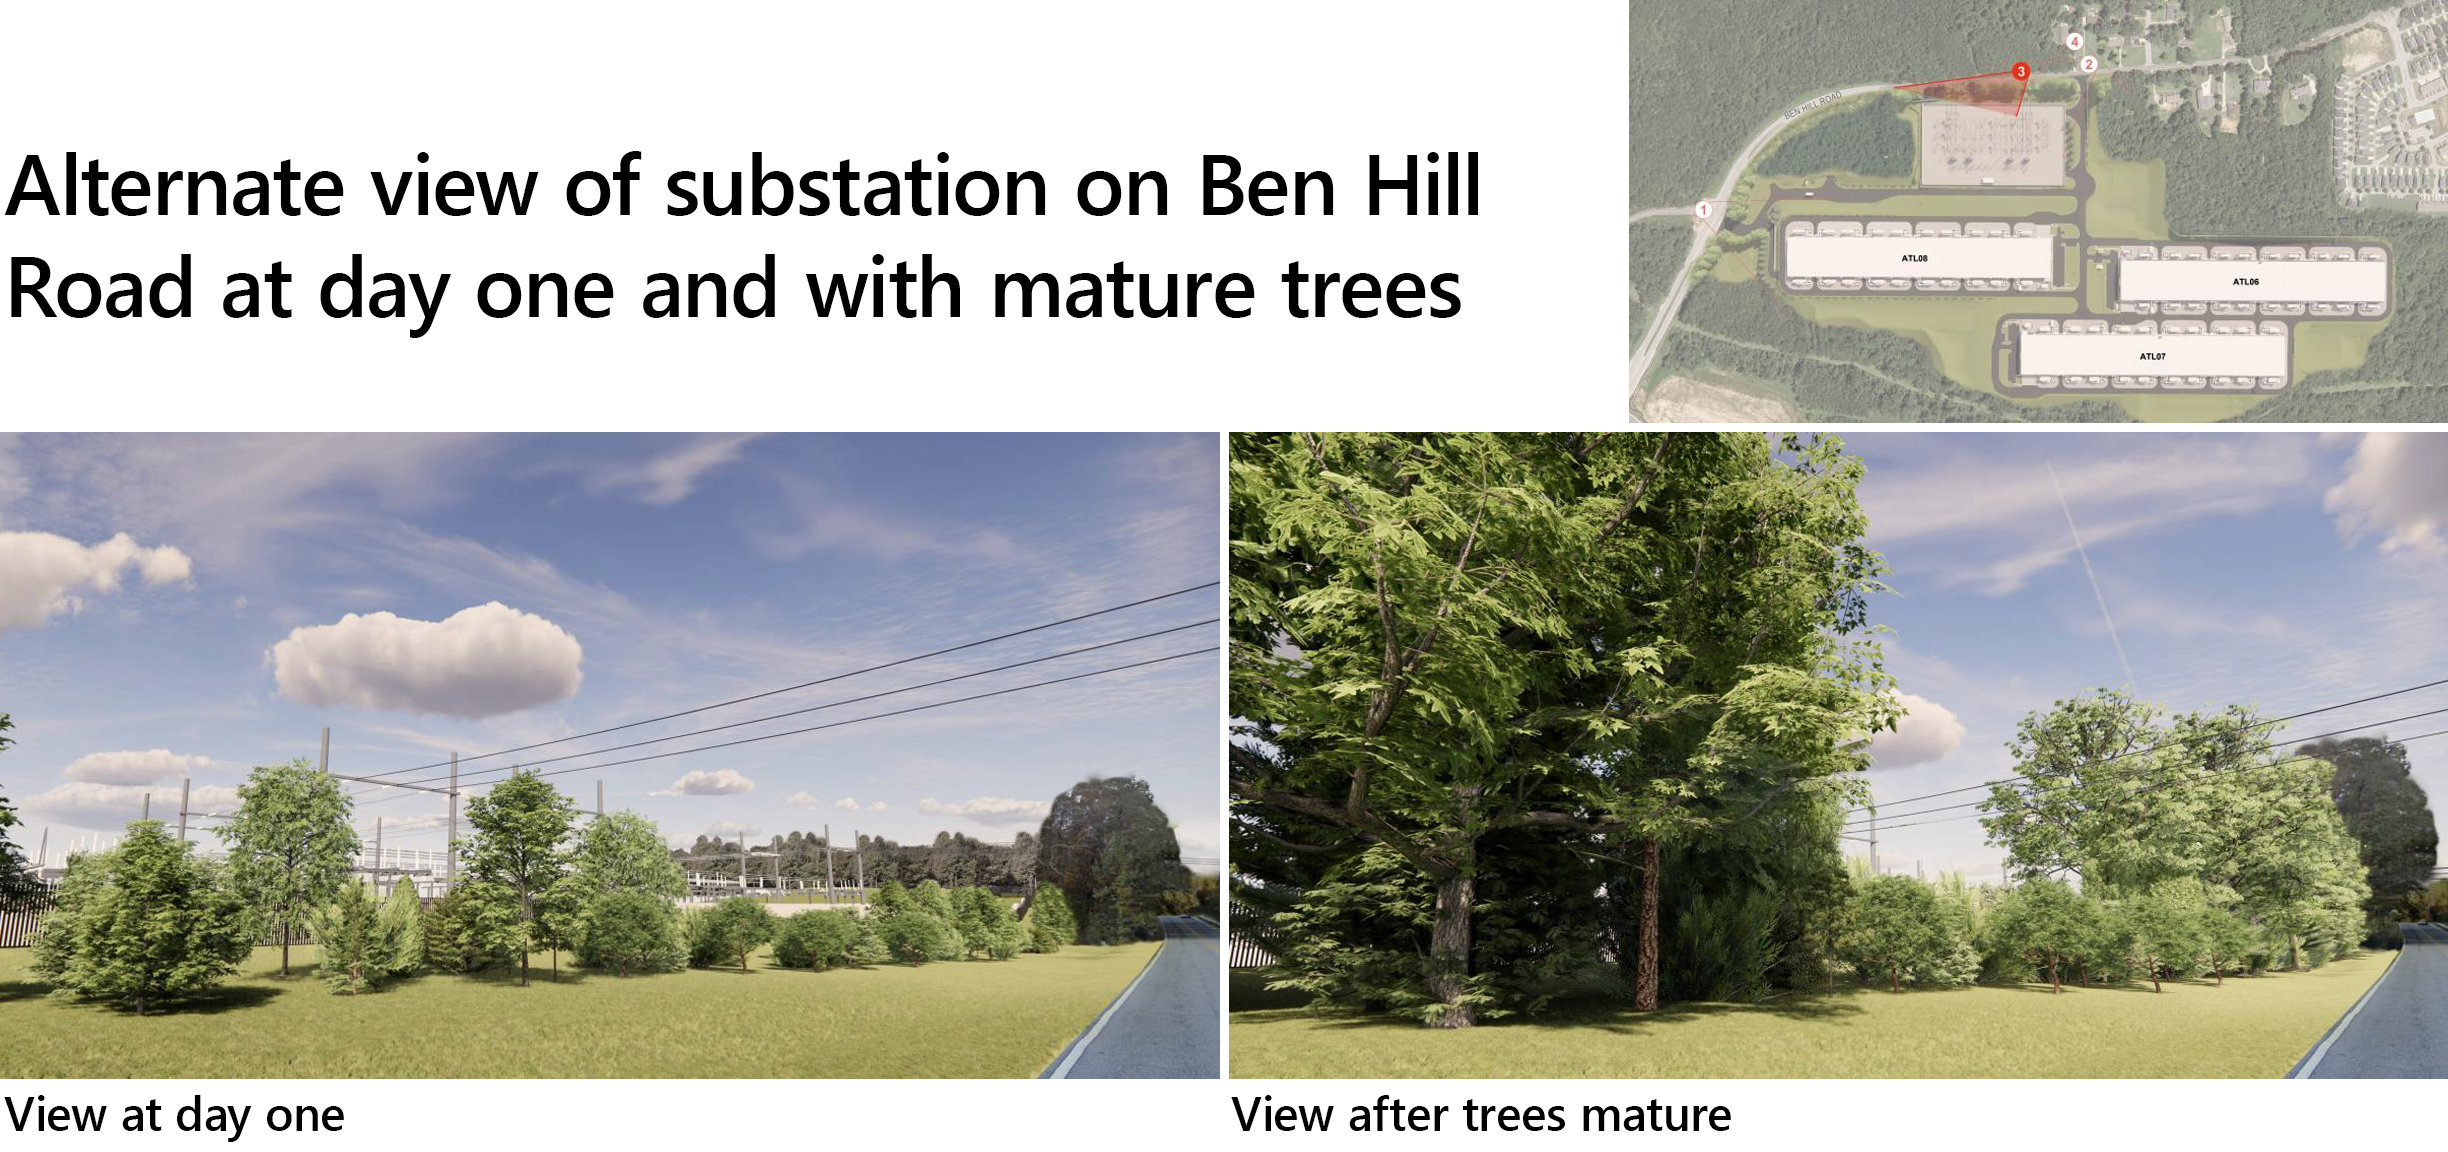 बेन हिल रोडवरील सबस्टेशनचे पहिल्या दिवशी पर्यायी दृश्य आणि परिपक्व झाडे